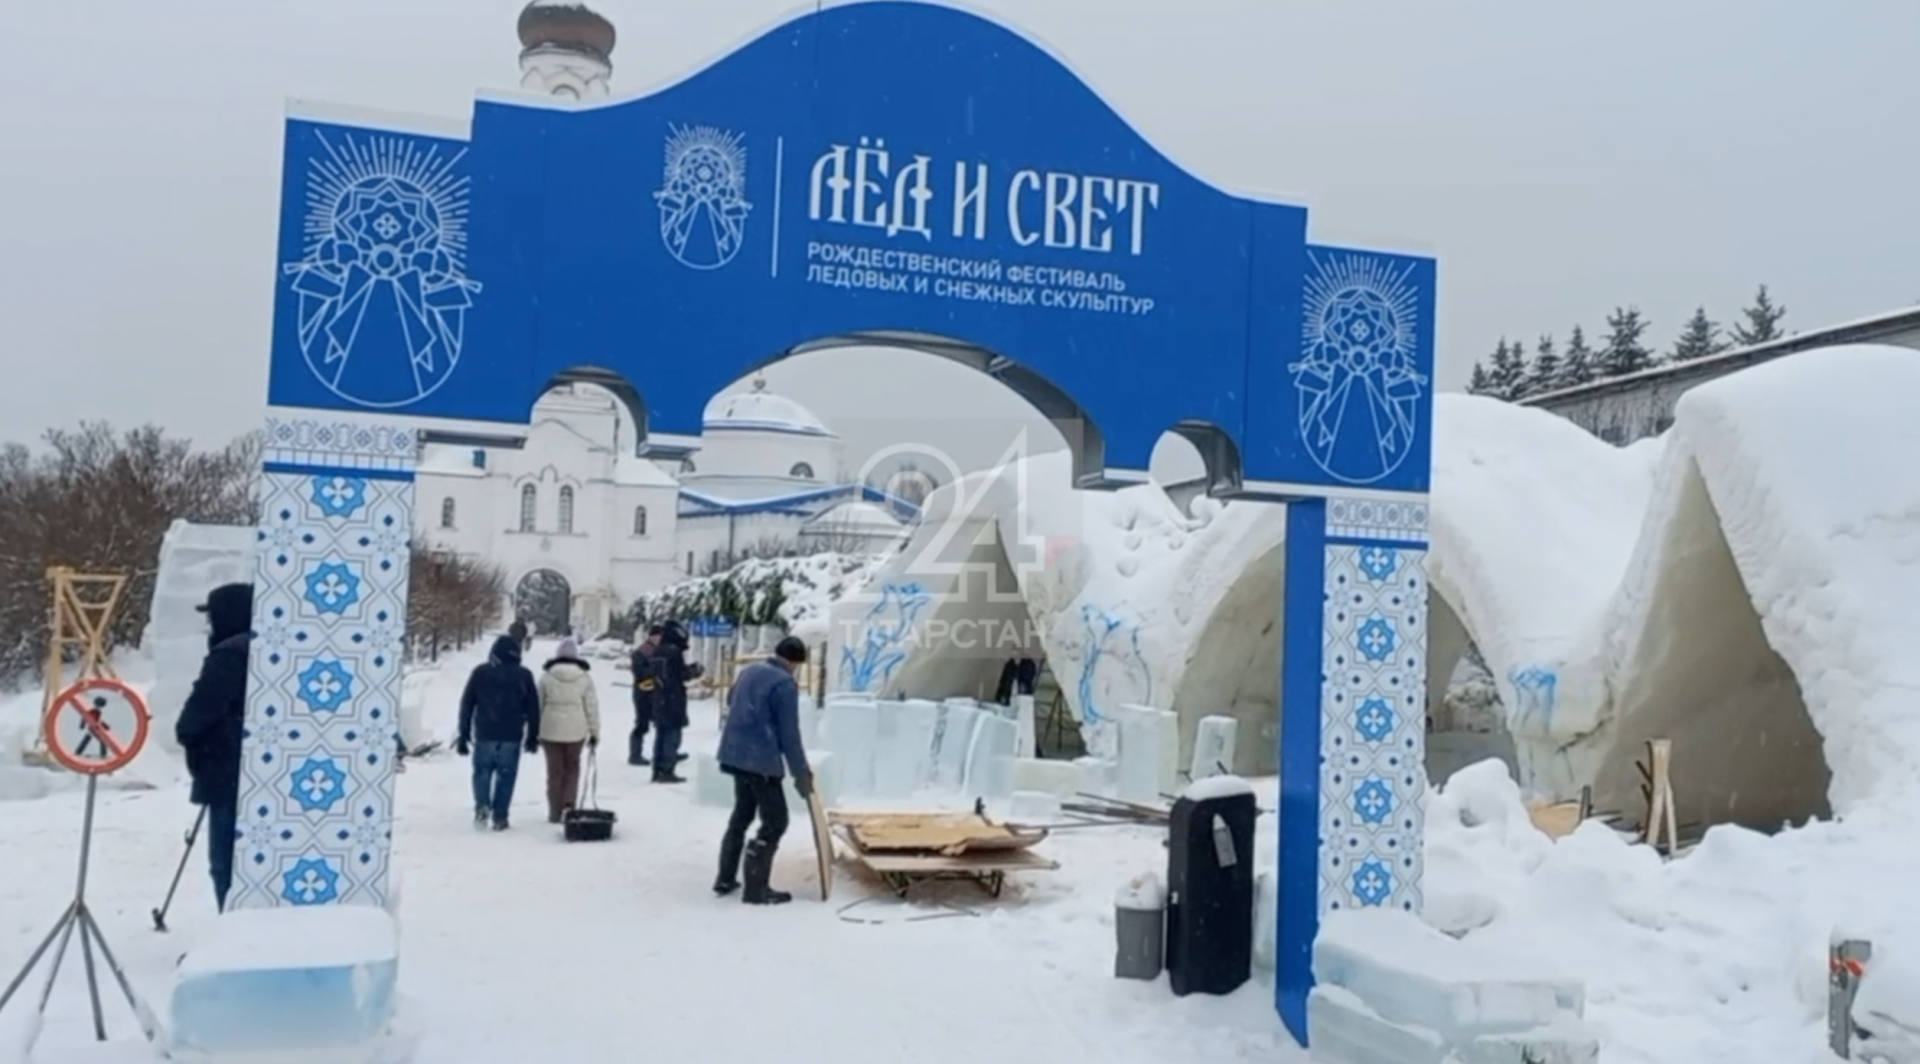 Фестиваль Лед и свет пройдет в Раифском монастыре в новогодние праздники